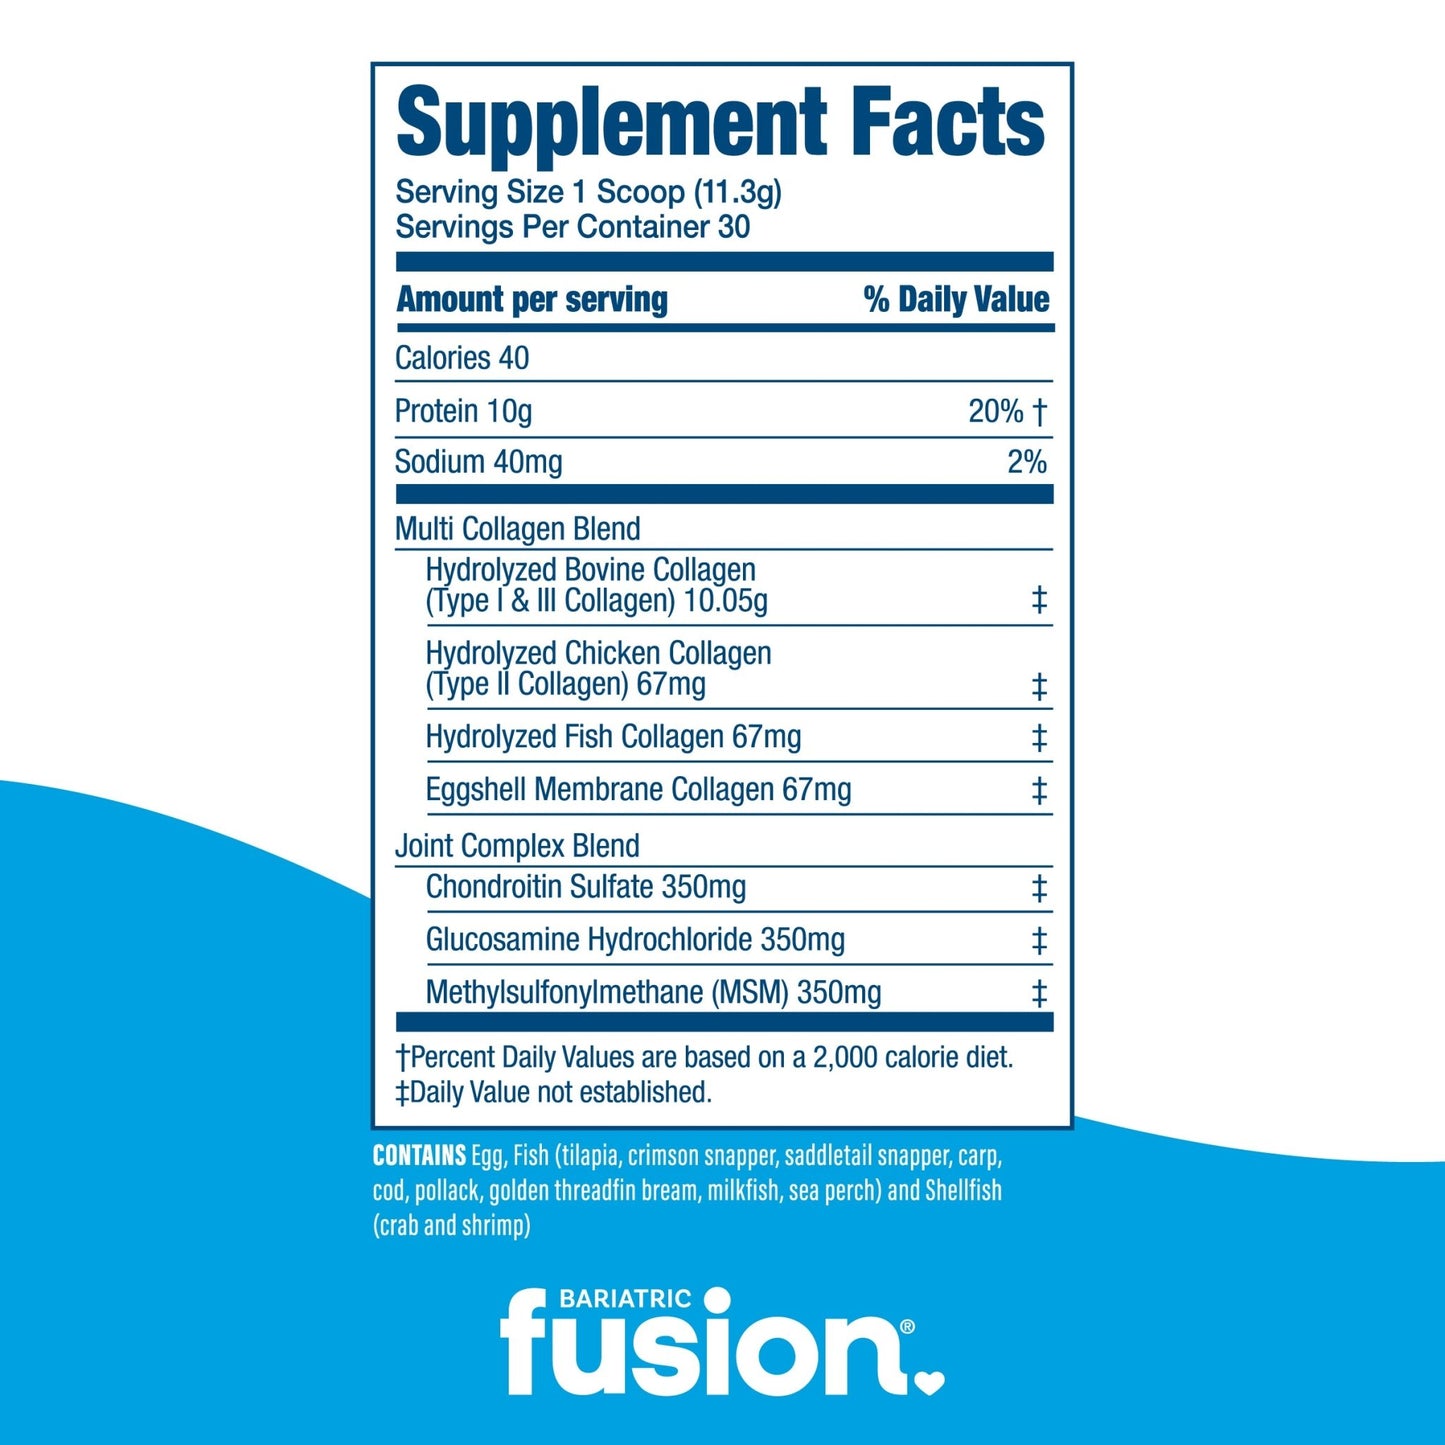 Unflavored Multi Collagen Protein Powder supplement facts.